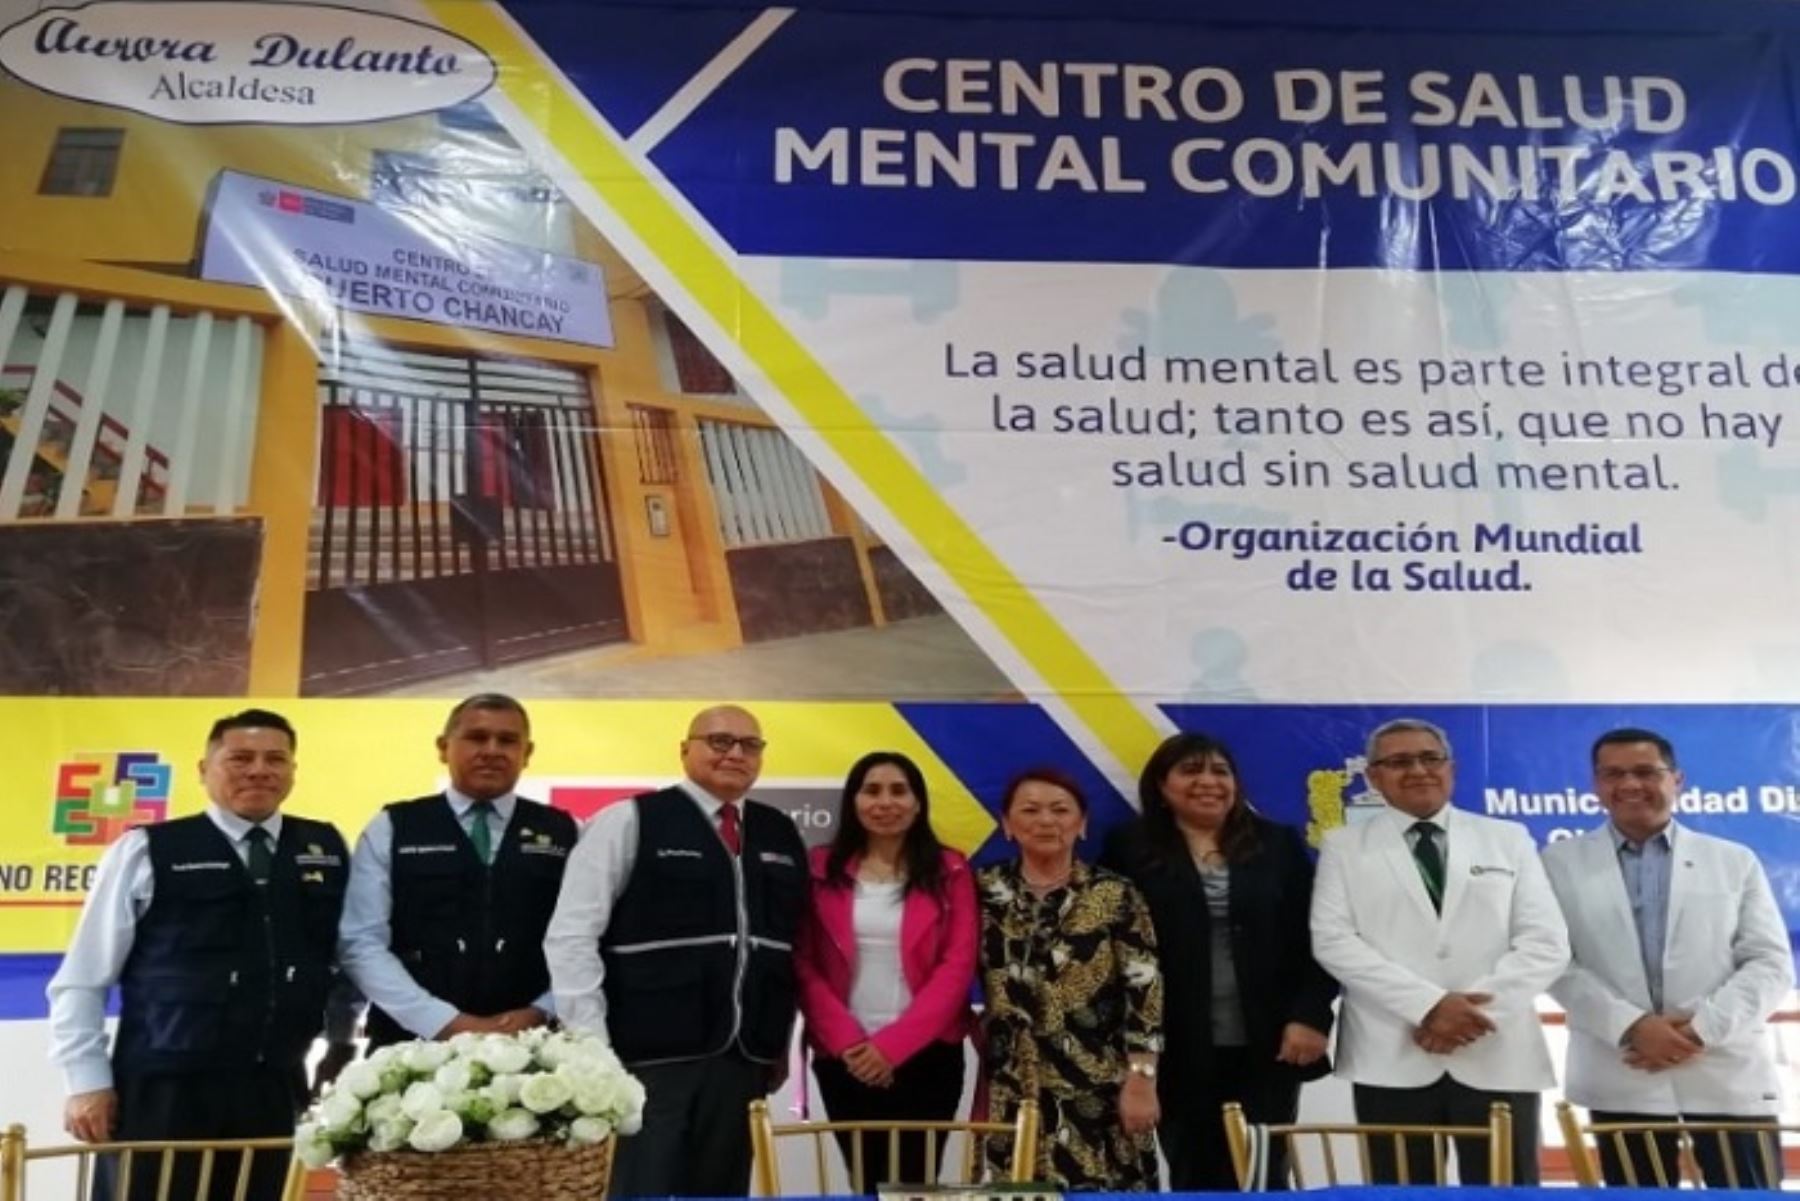 Estos nuevos establecimientos que demandaron una inversión de más de 670,000 soles tienen como objetivo brindar acceso a personas con problemas de salud mental, tratamiento, recuperación y rehabilitación psicosocial para disminuir de esta forma los índices de trastornos mentales en la región Lima.